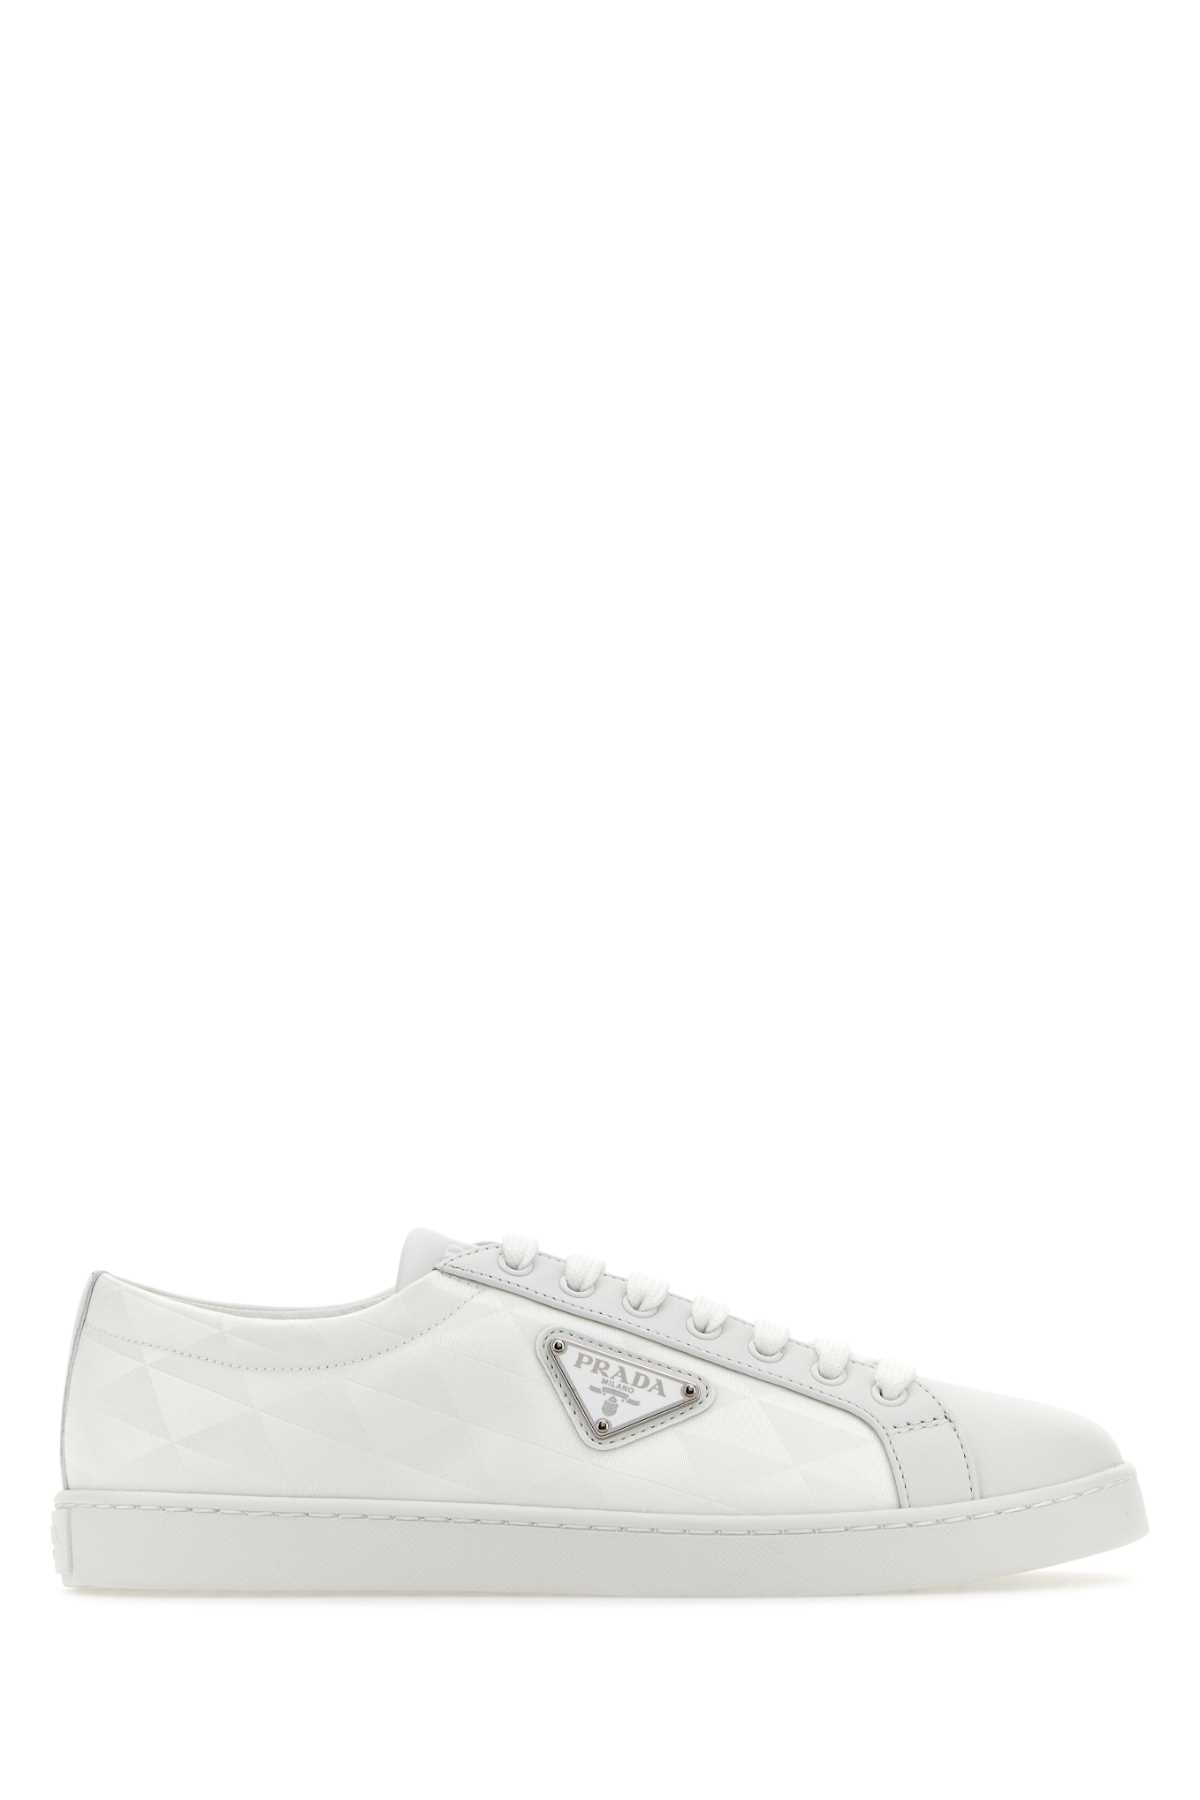 Prada White Nylon And Leather Sneakers